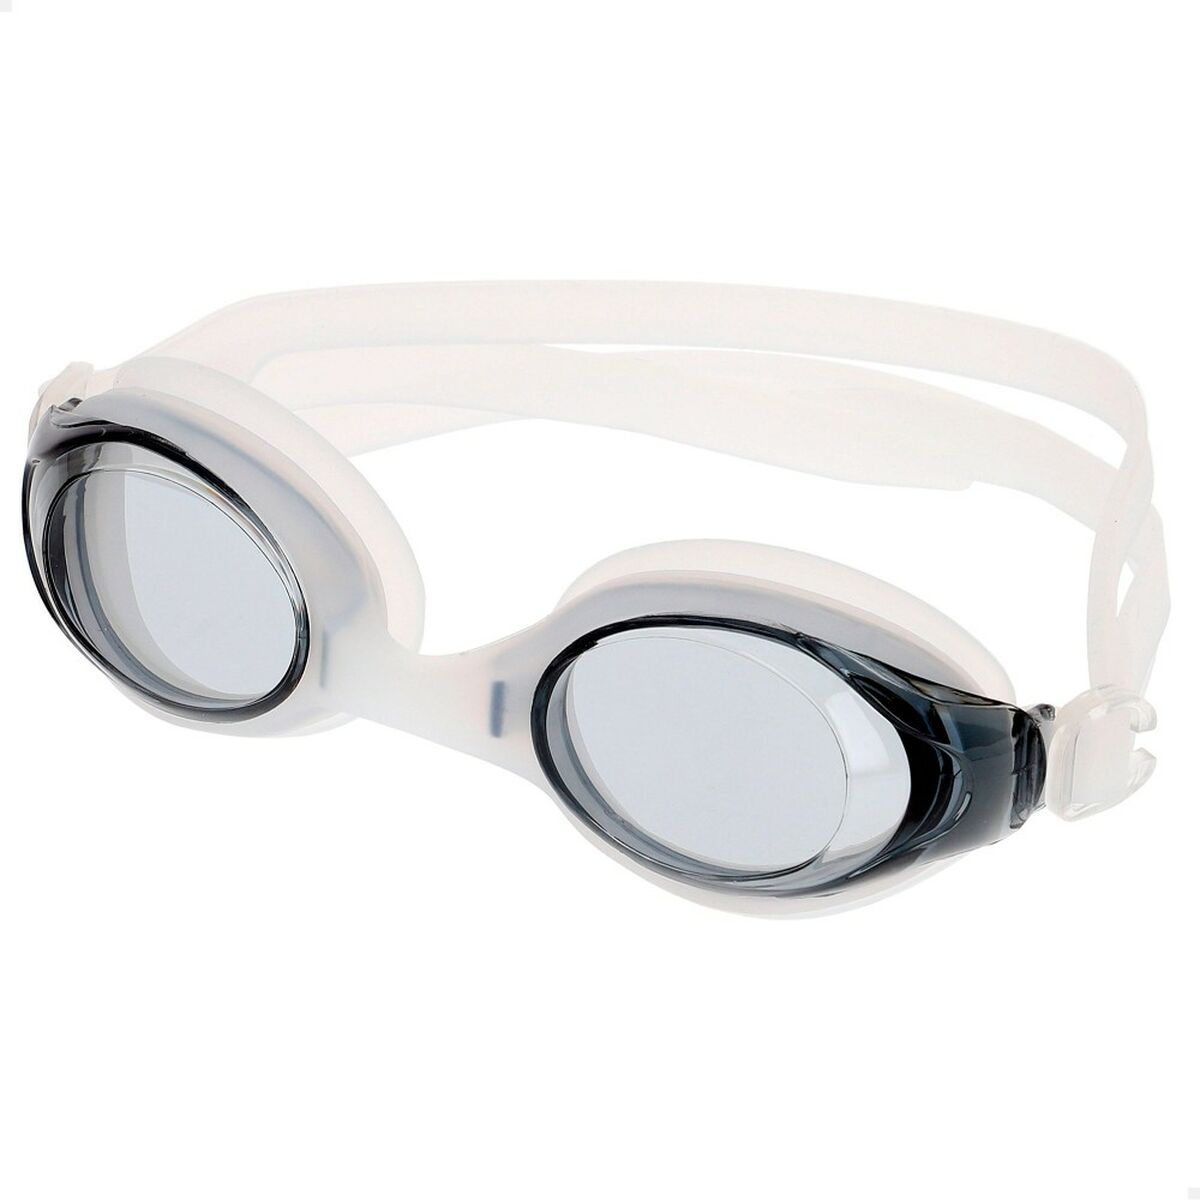 Svømmebriller til Voksne Aktive (12 enheder)